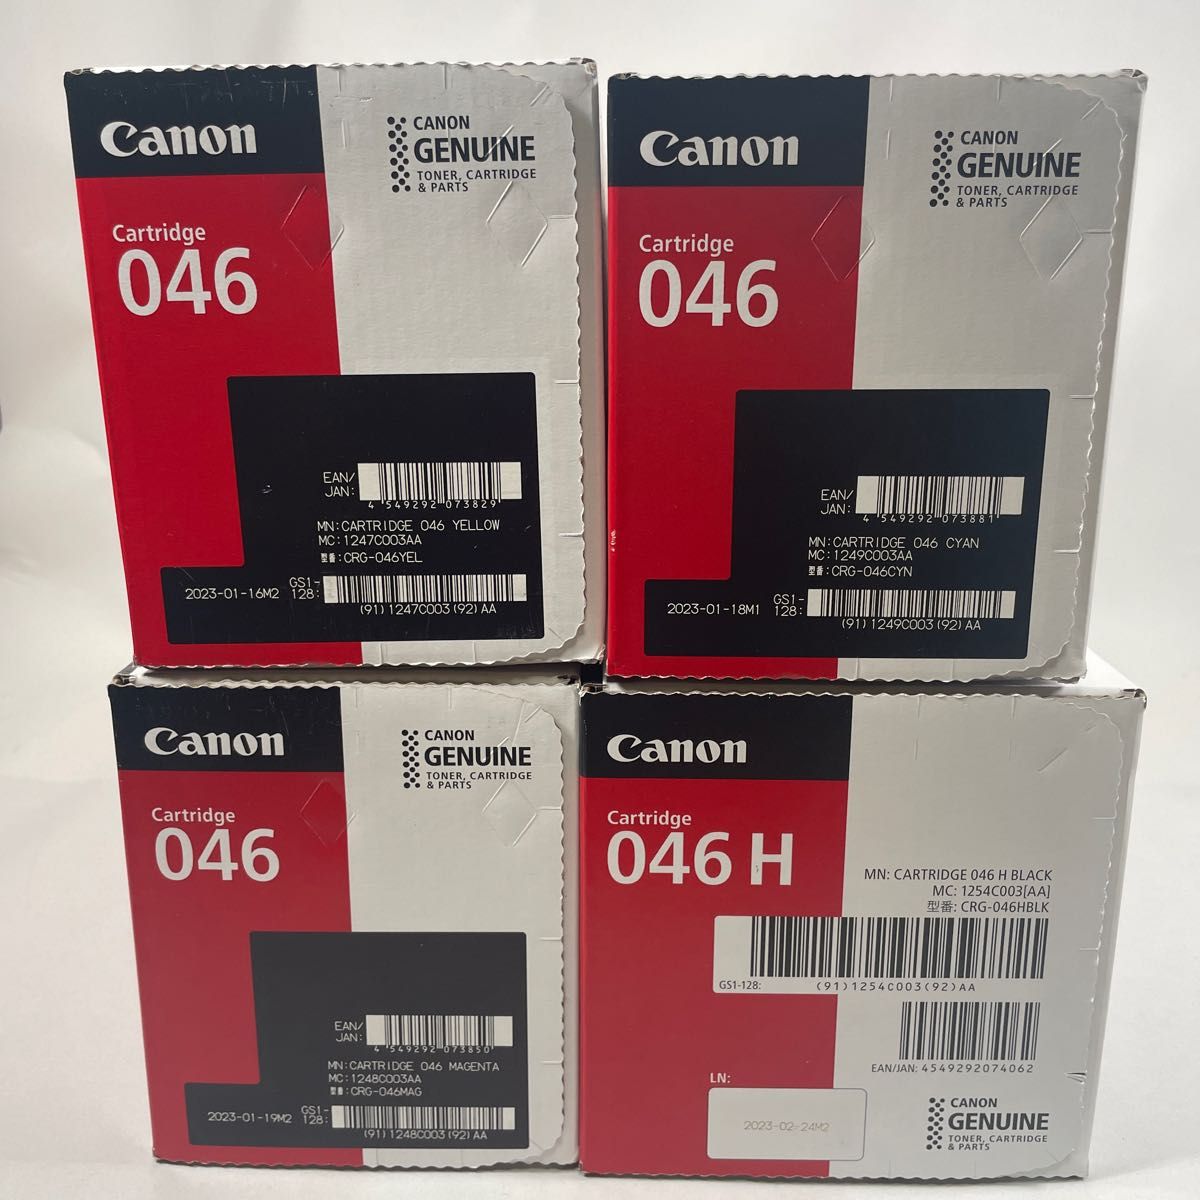 Canon トナーカートリッジ CRG-046 4色セット 新品未使用品 純正品